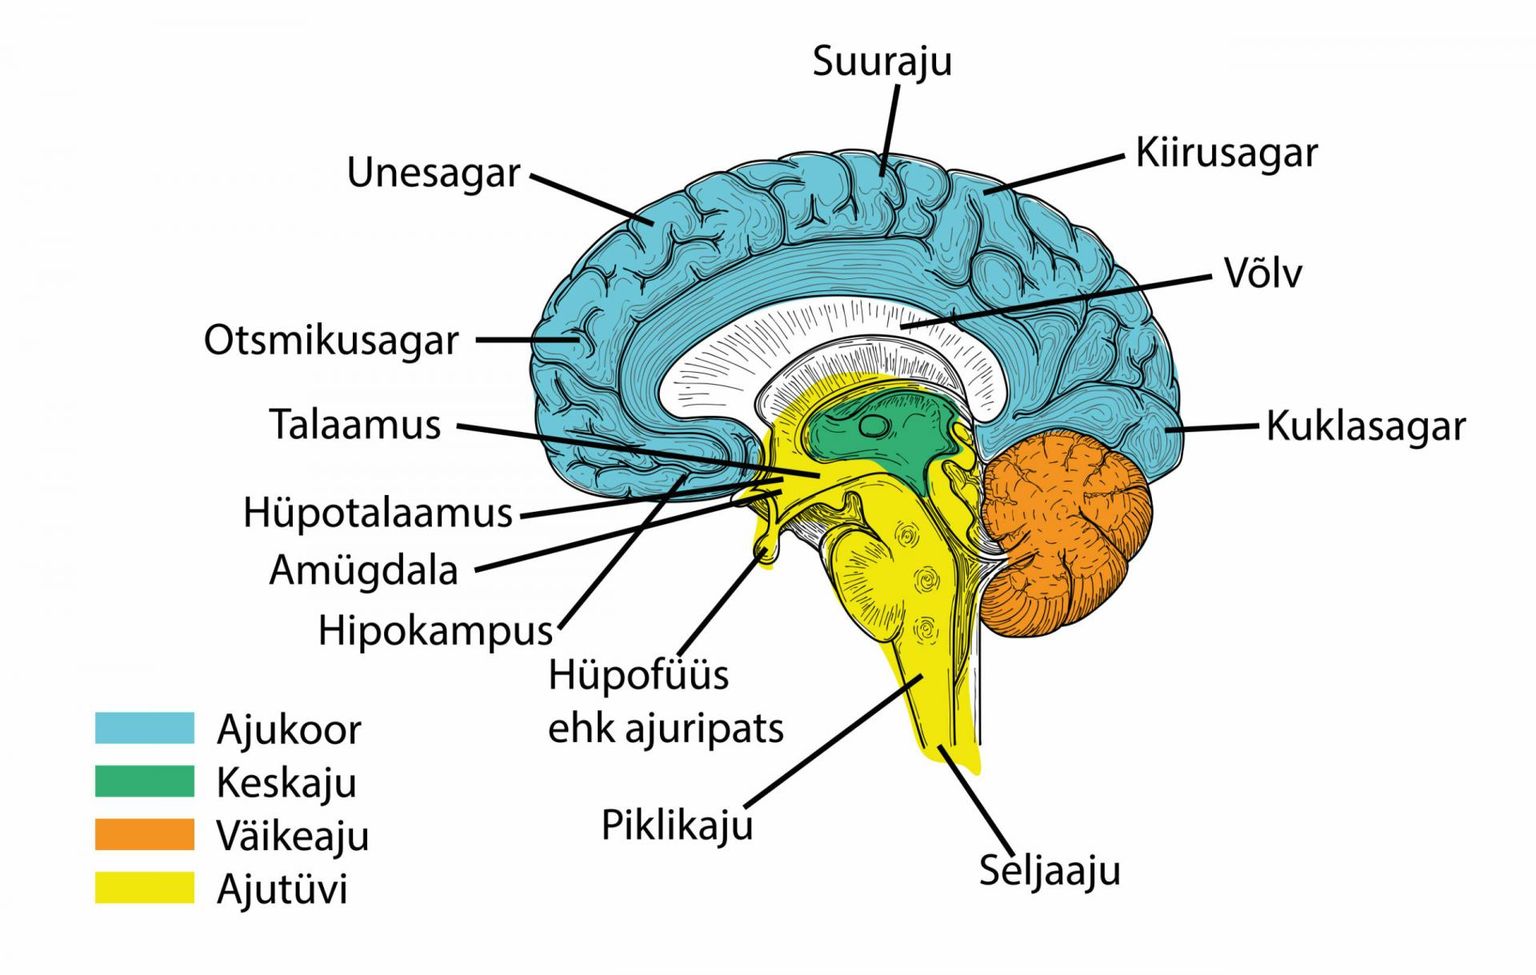 Teadlased usuvad, et mälu ja mäletamisega seotud funktsioonid toimuvad inimese ajus hipokampuse piirkonnas.